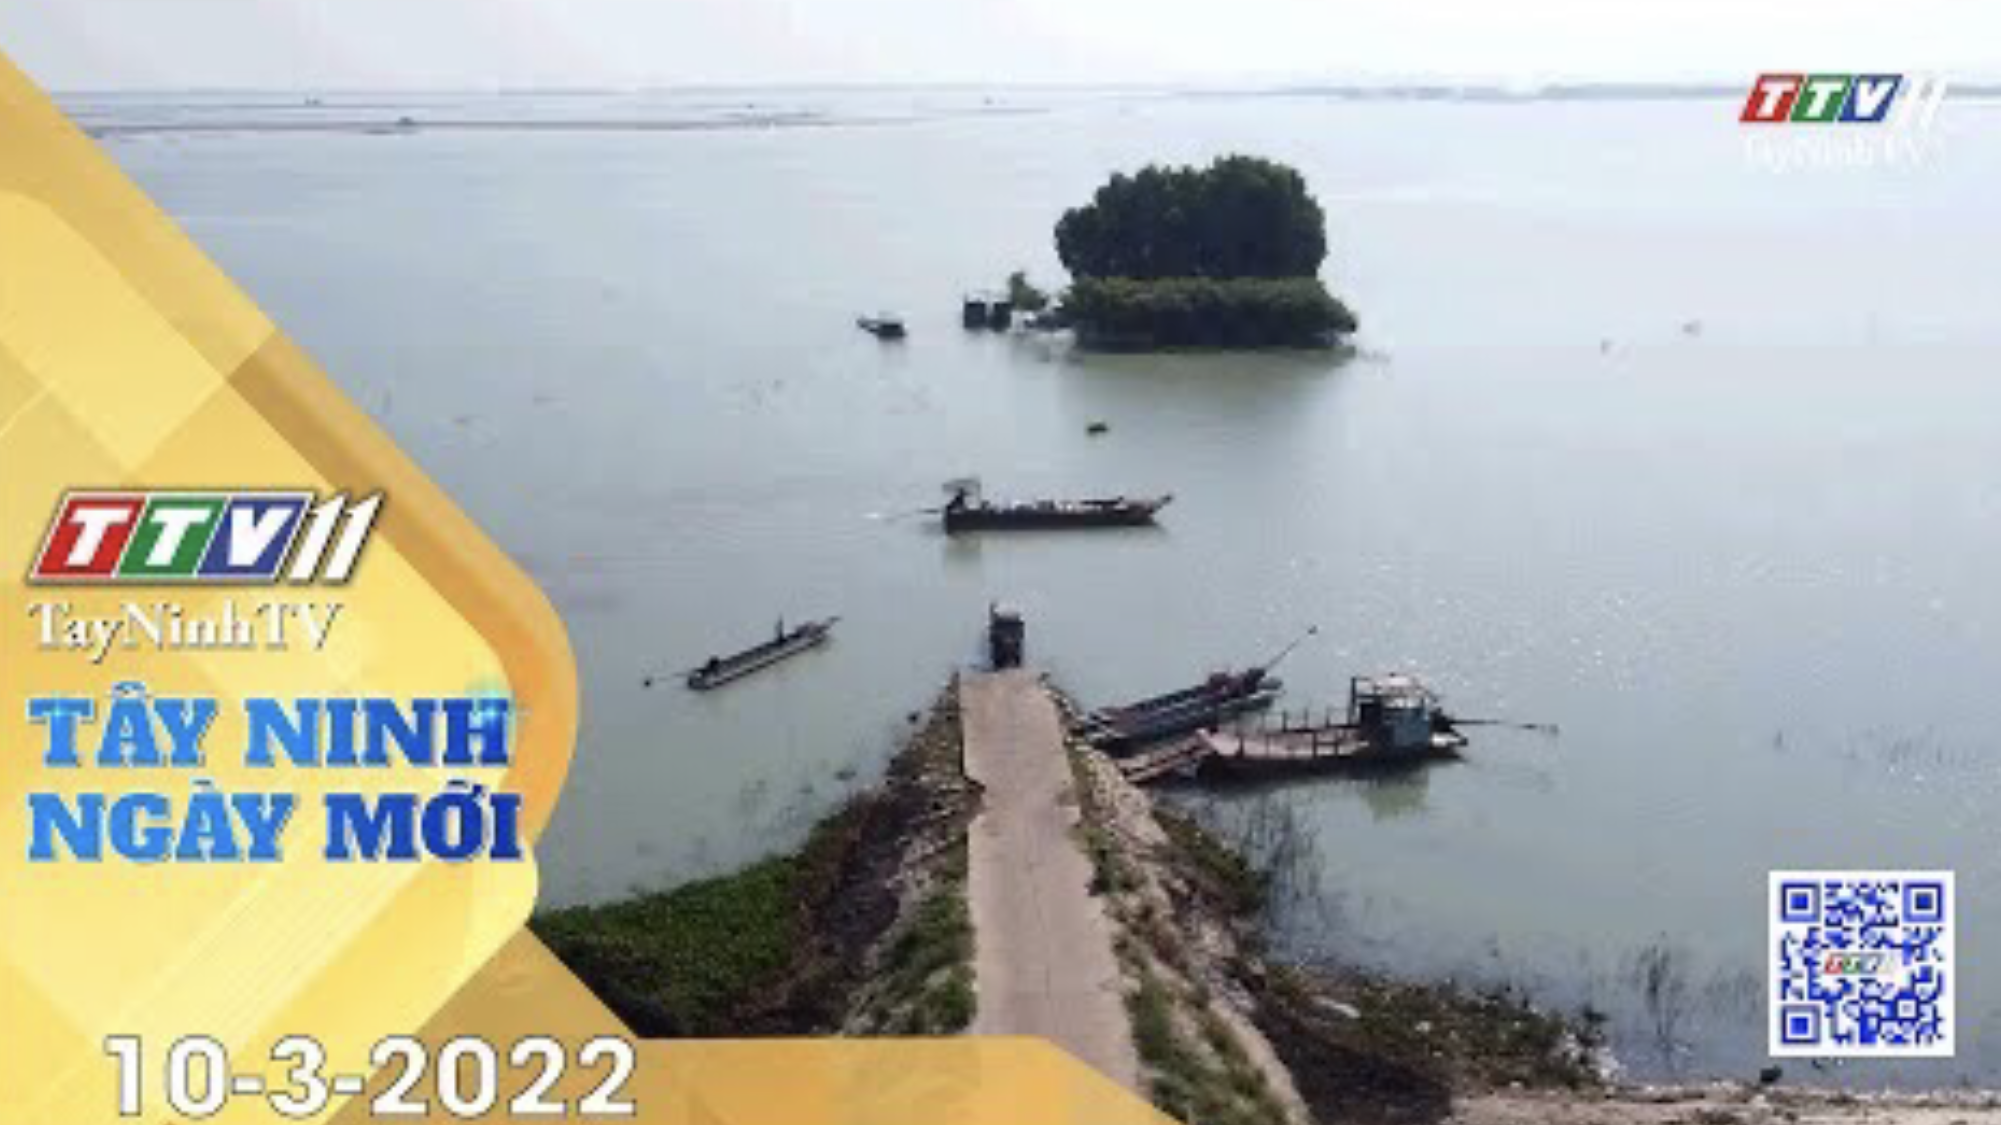 Tây Ninh ngày mới 10-3-2022 | Tin tức hôm nay | TayNinhTV